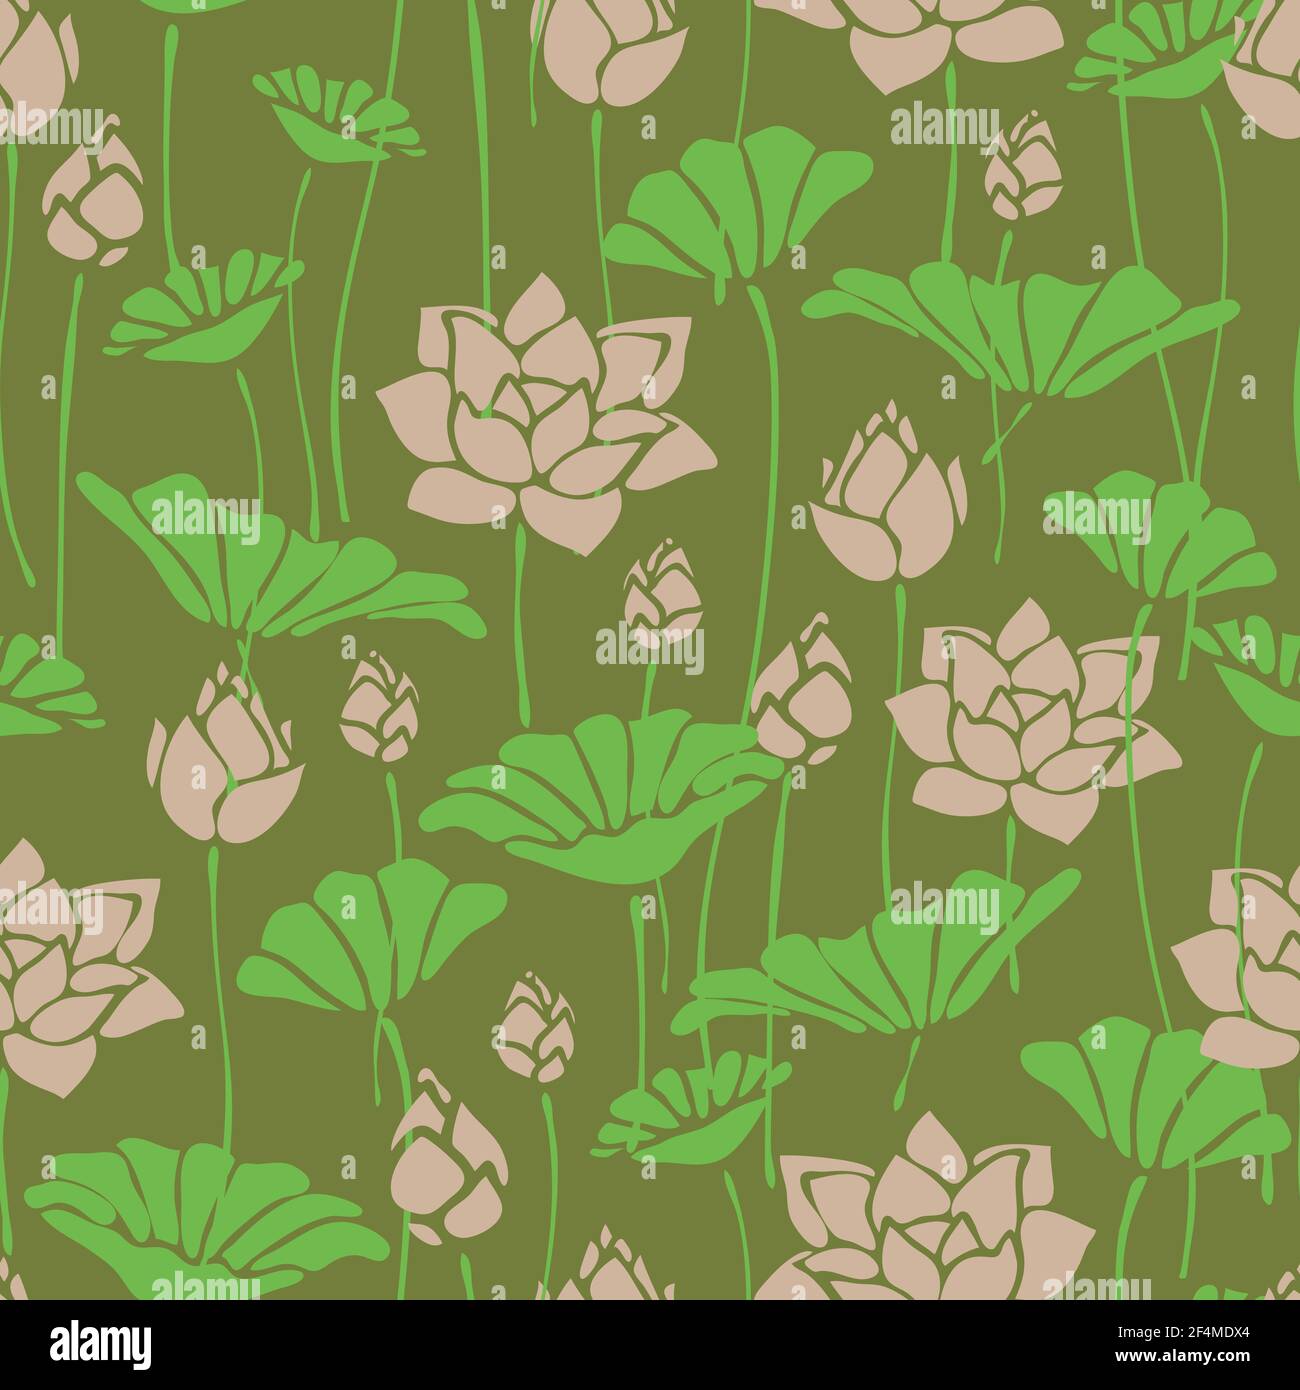 Motivo vettoriale senza cuciture con fiore di loto su sfondo verde. Romantico disegno floreale della carta da parati con giglio d'acqua. Dolce natura moda tessile. Illustrazione Vettoriale